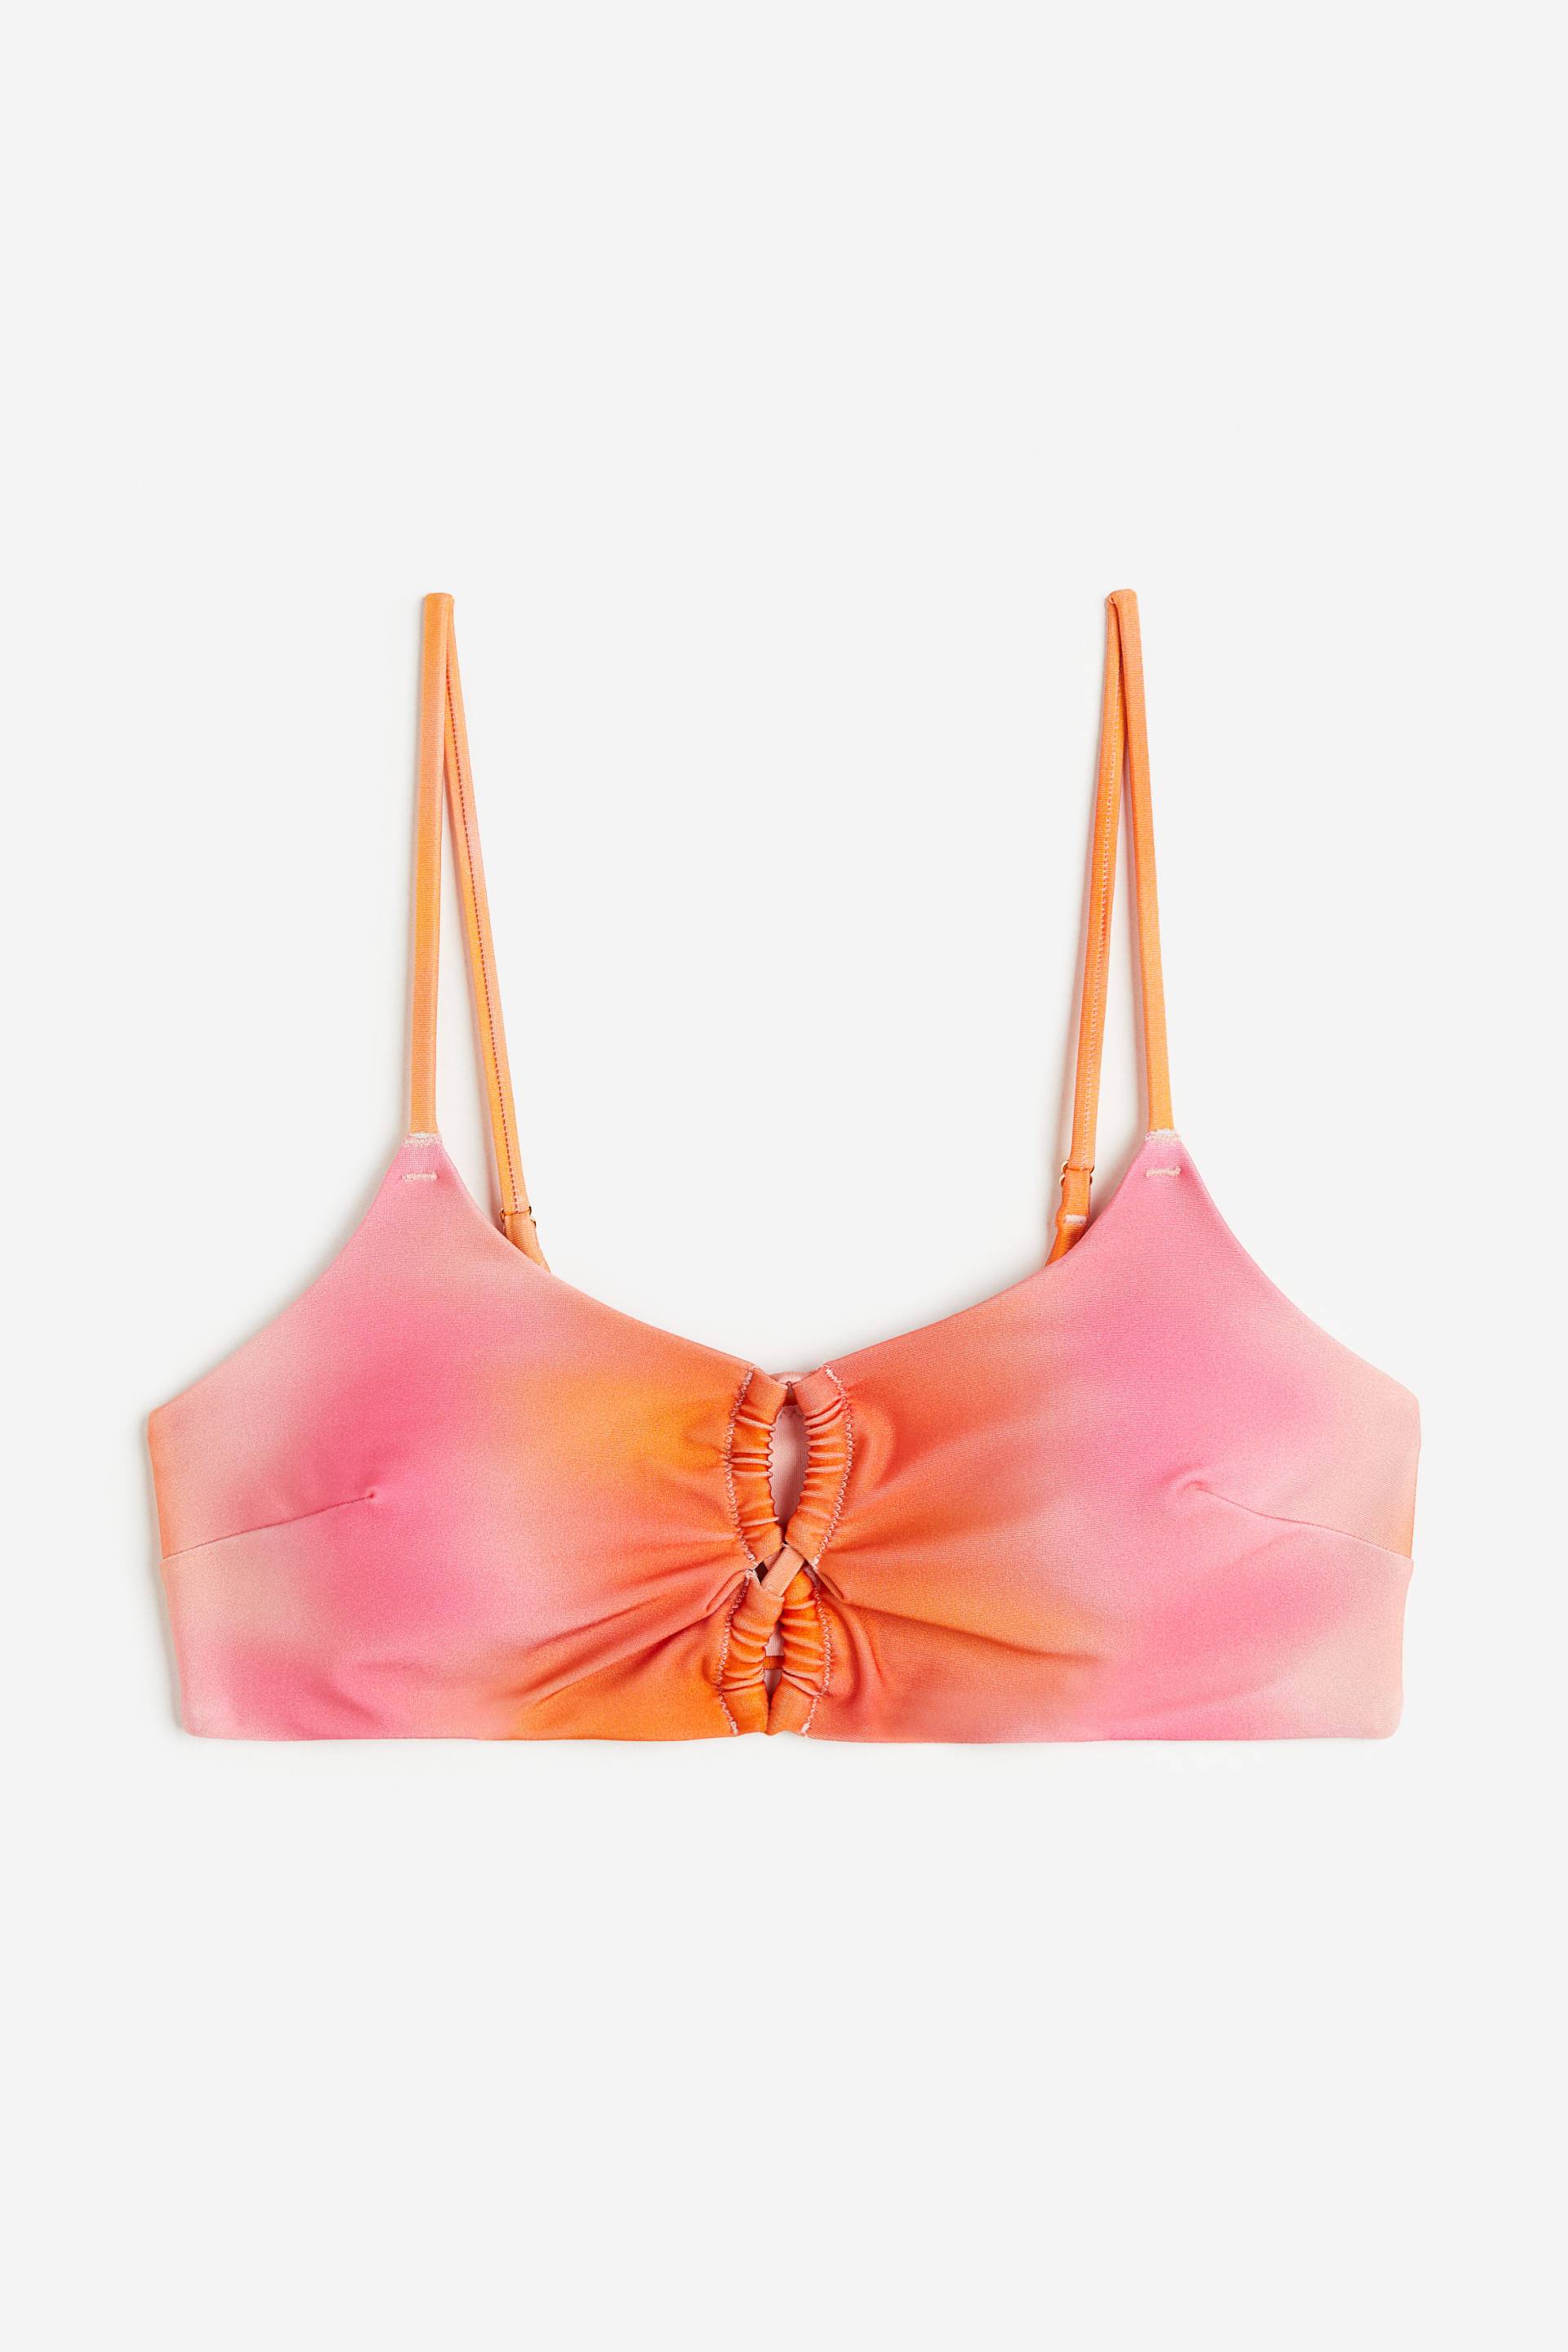 H&M Wattiertes Bikinitop Orange, Bikini-Oberteil in Größe 32. Farbe: Orange 003 von H&M